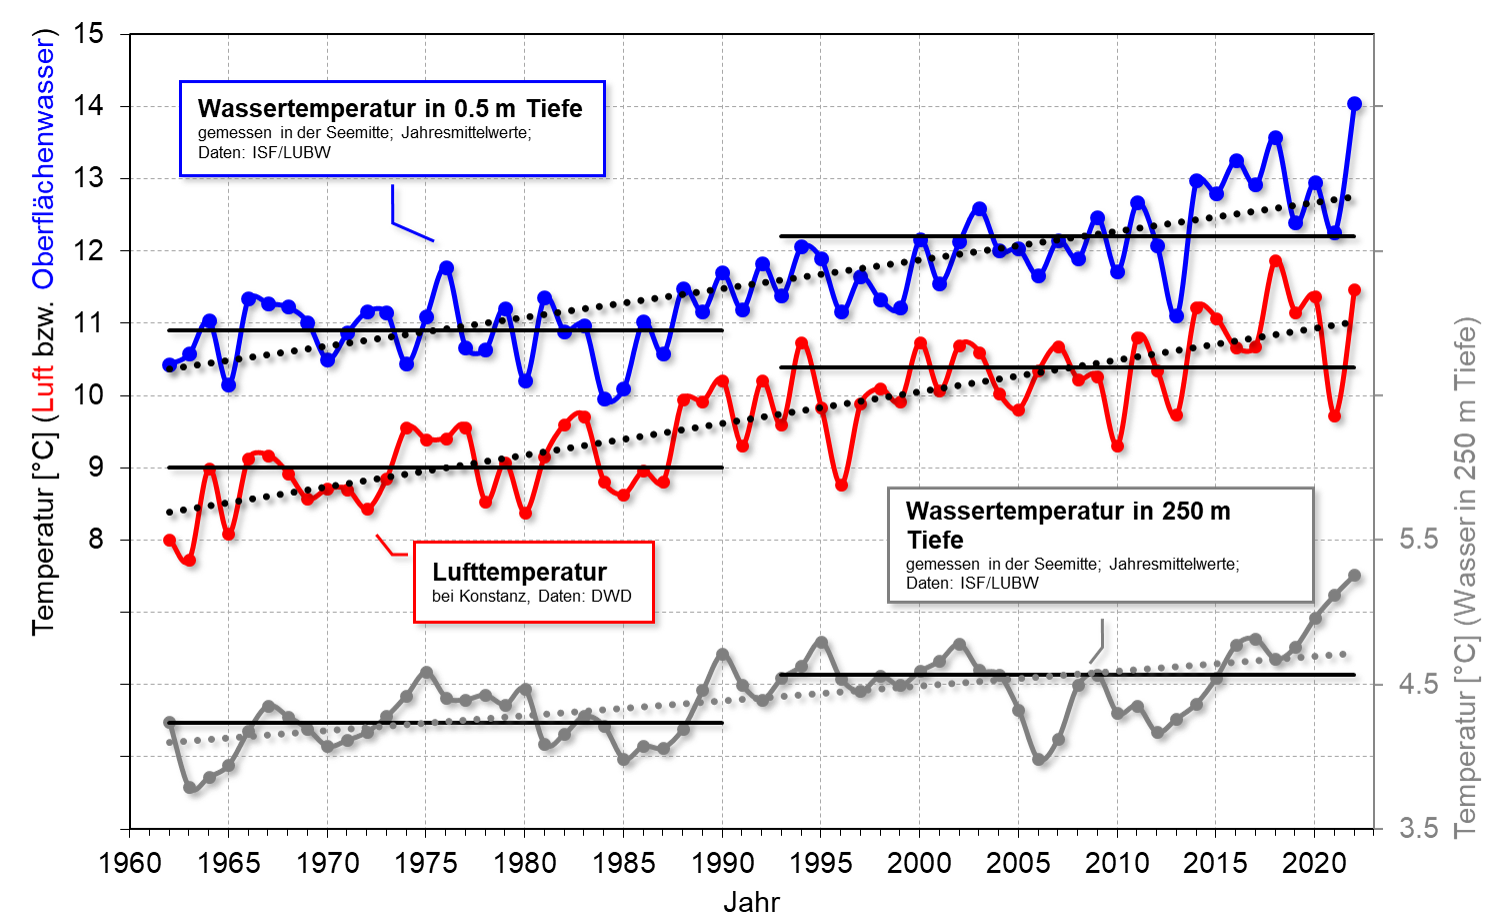 Die Grafik zeigt die Zunahme der Wassertemperatur an der Oberfläche des Bodensees in blau, der Lufttemperatur bei Konstanz in rot und der Wassertemperatur in der Nähe des Seebodens in grau in den Jahren von 1960 - 2022.